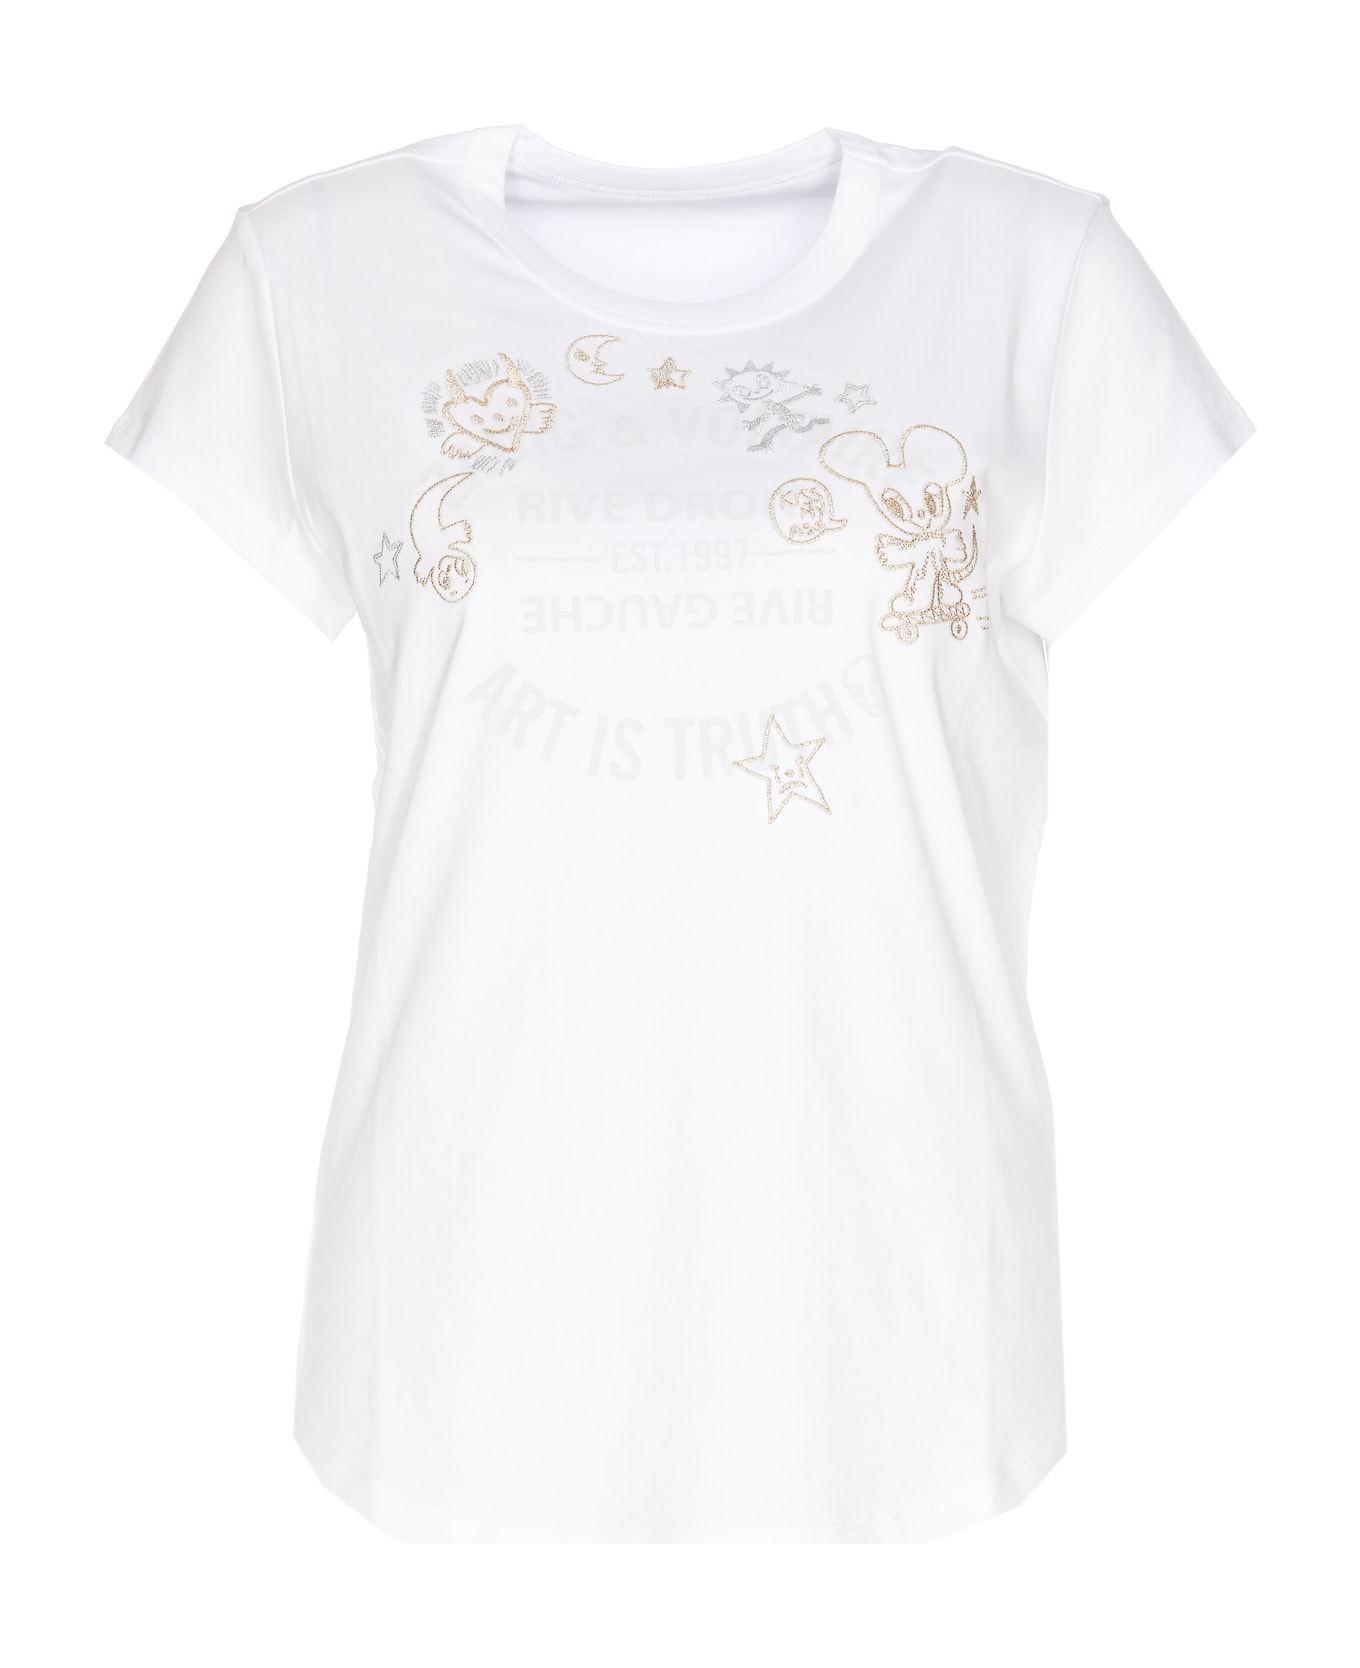 Zadig & Voltaire Woop Ico Blason T-shirt - White Tシャツ